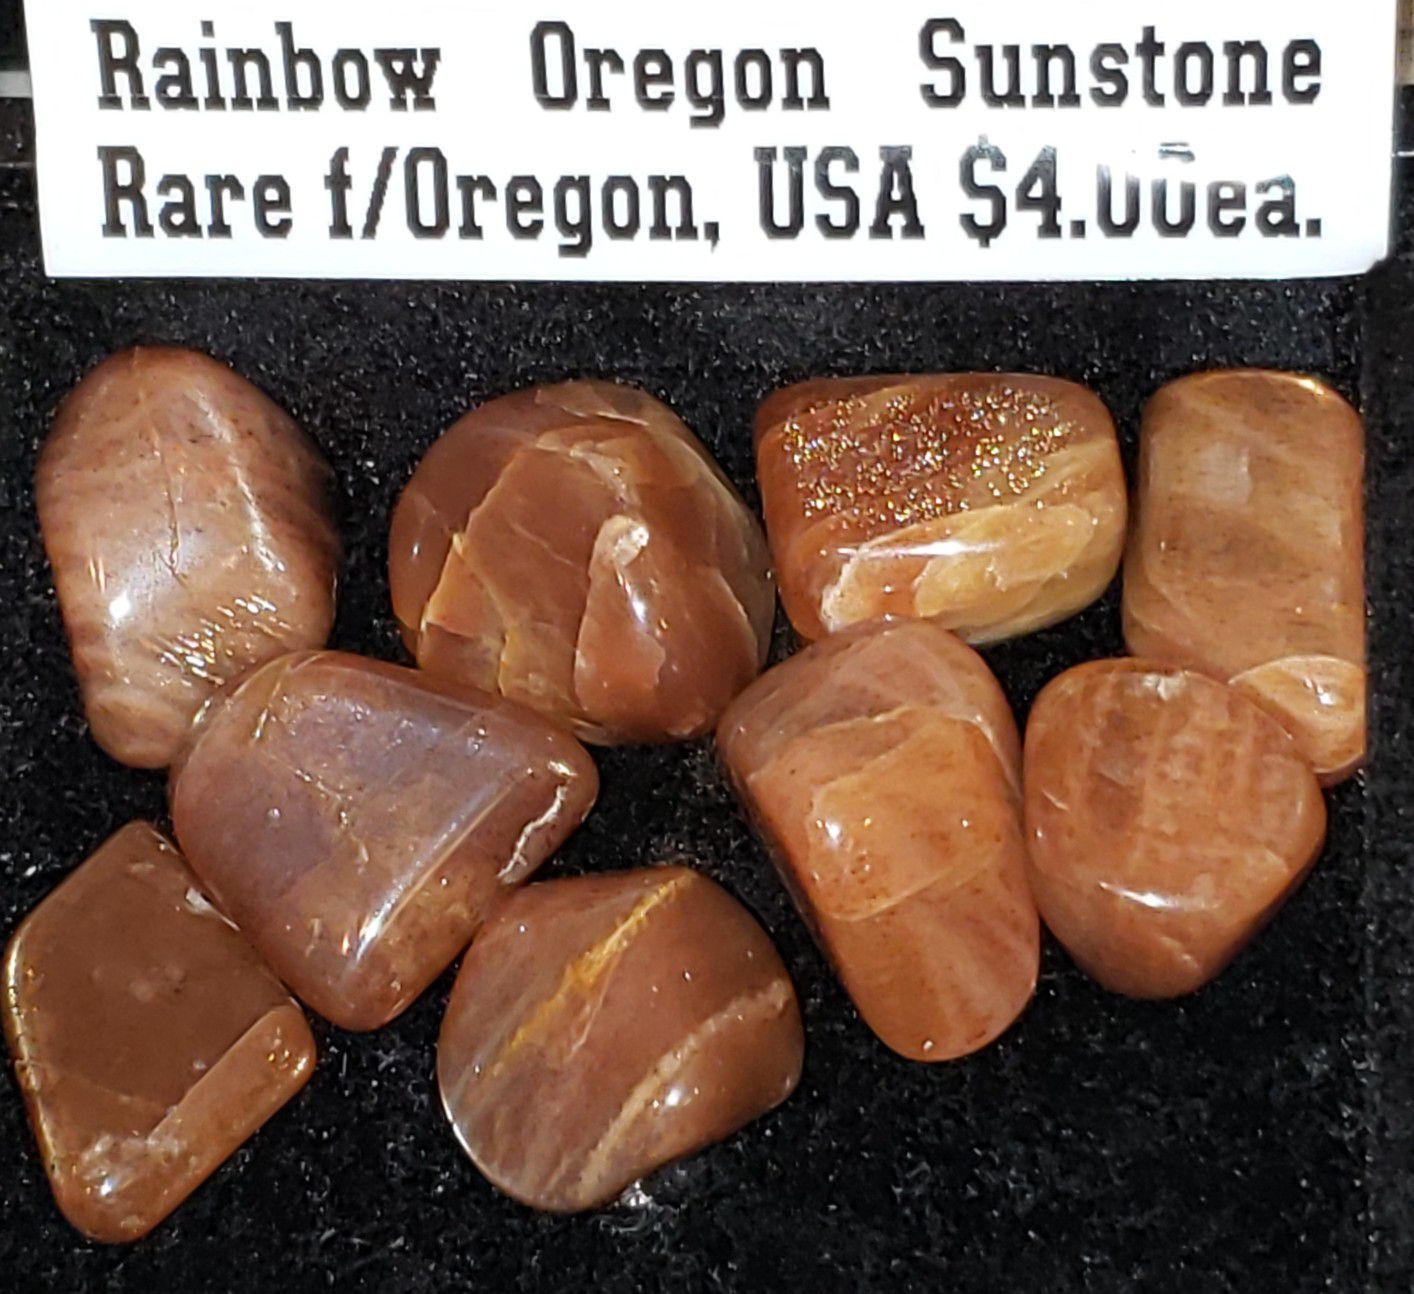 1pc Rare Oregon Rainbow Sunstone Tumbled & Polished Healing Crystal Gemstones from Oregon, USA